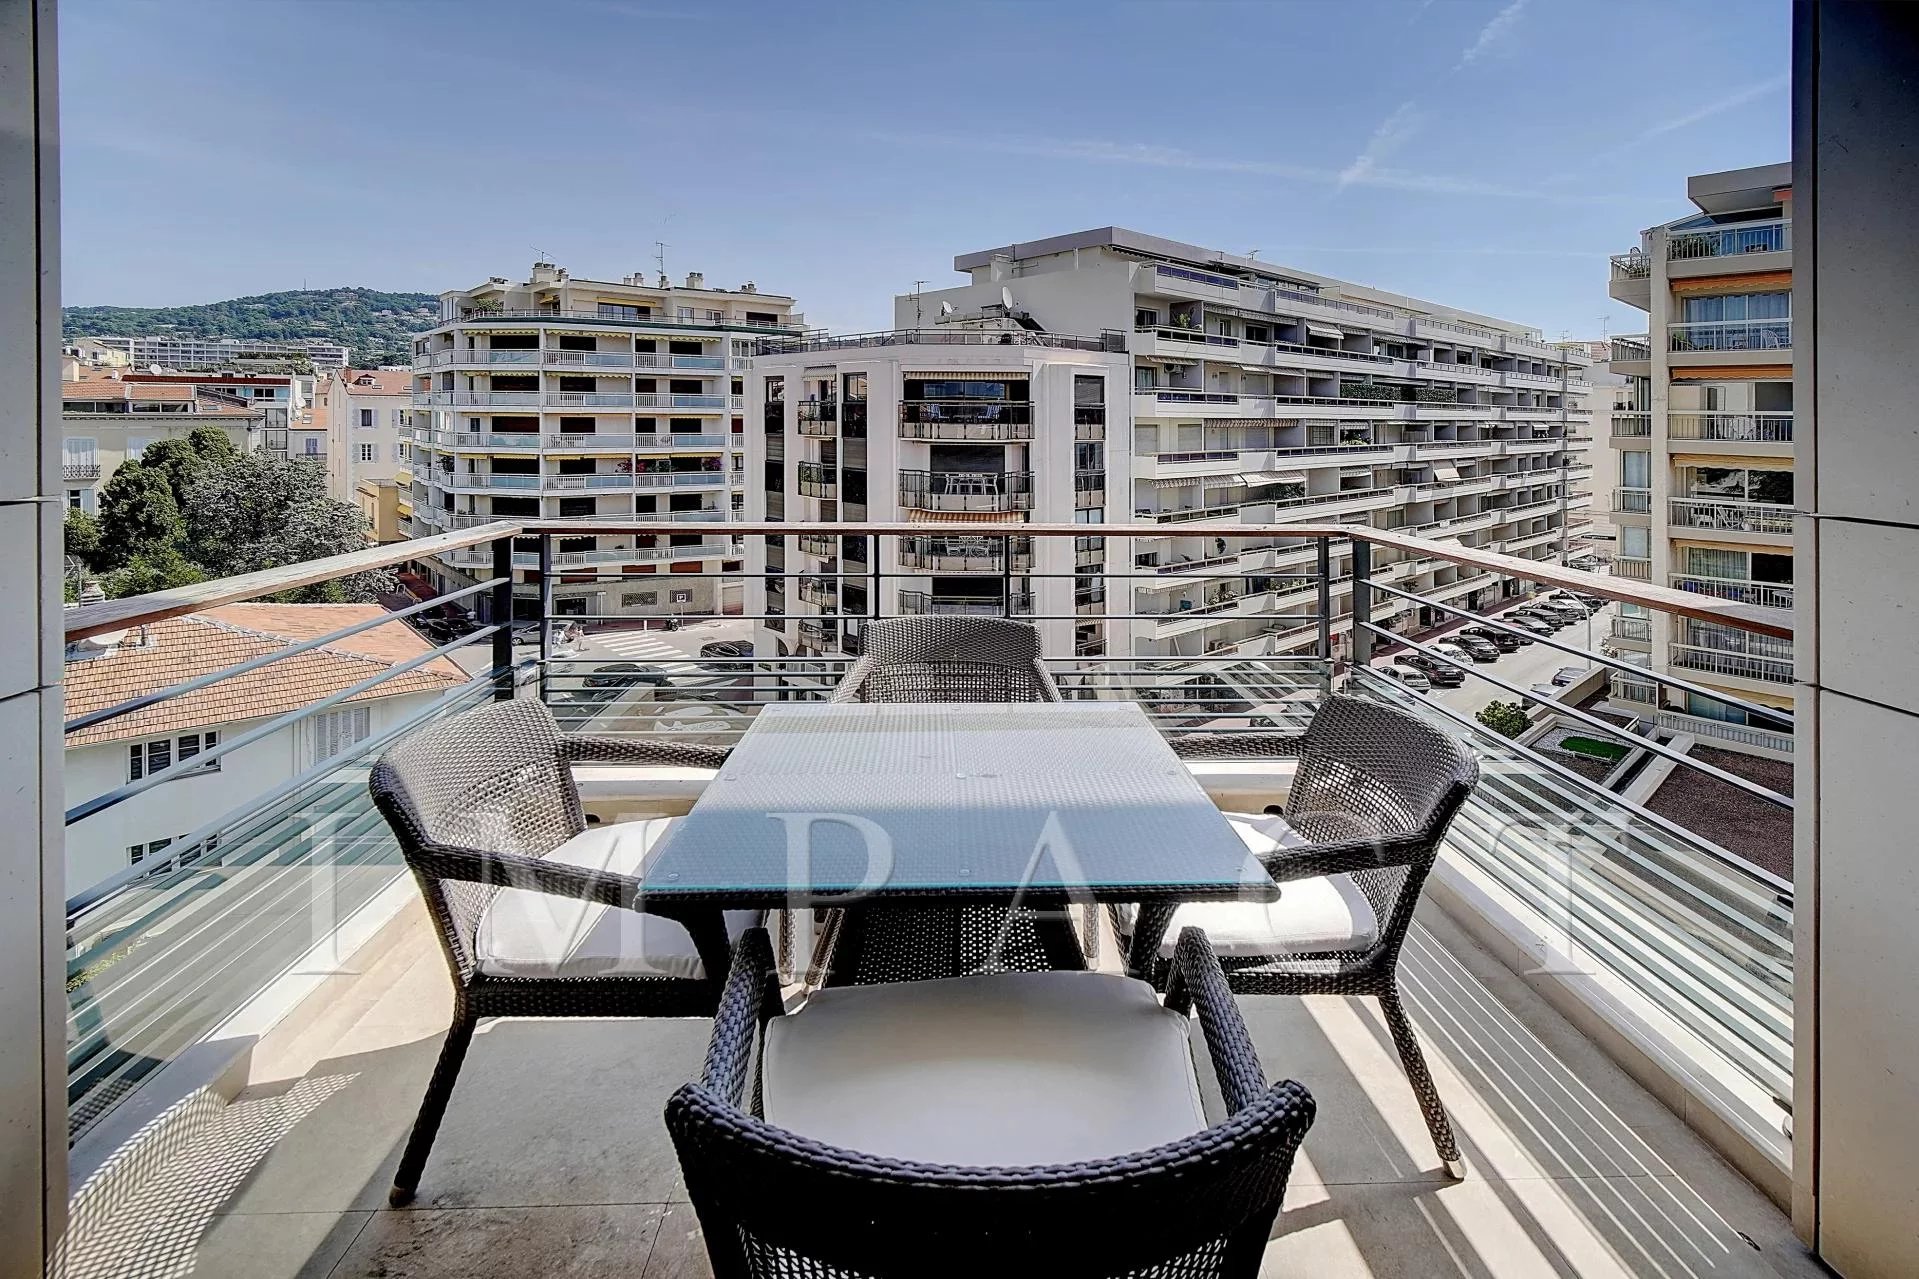 Location Très bel appartement en plein centre de Cannes